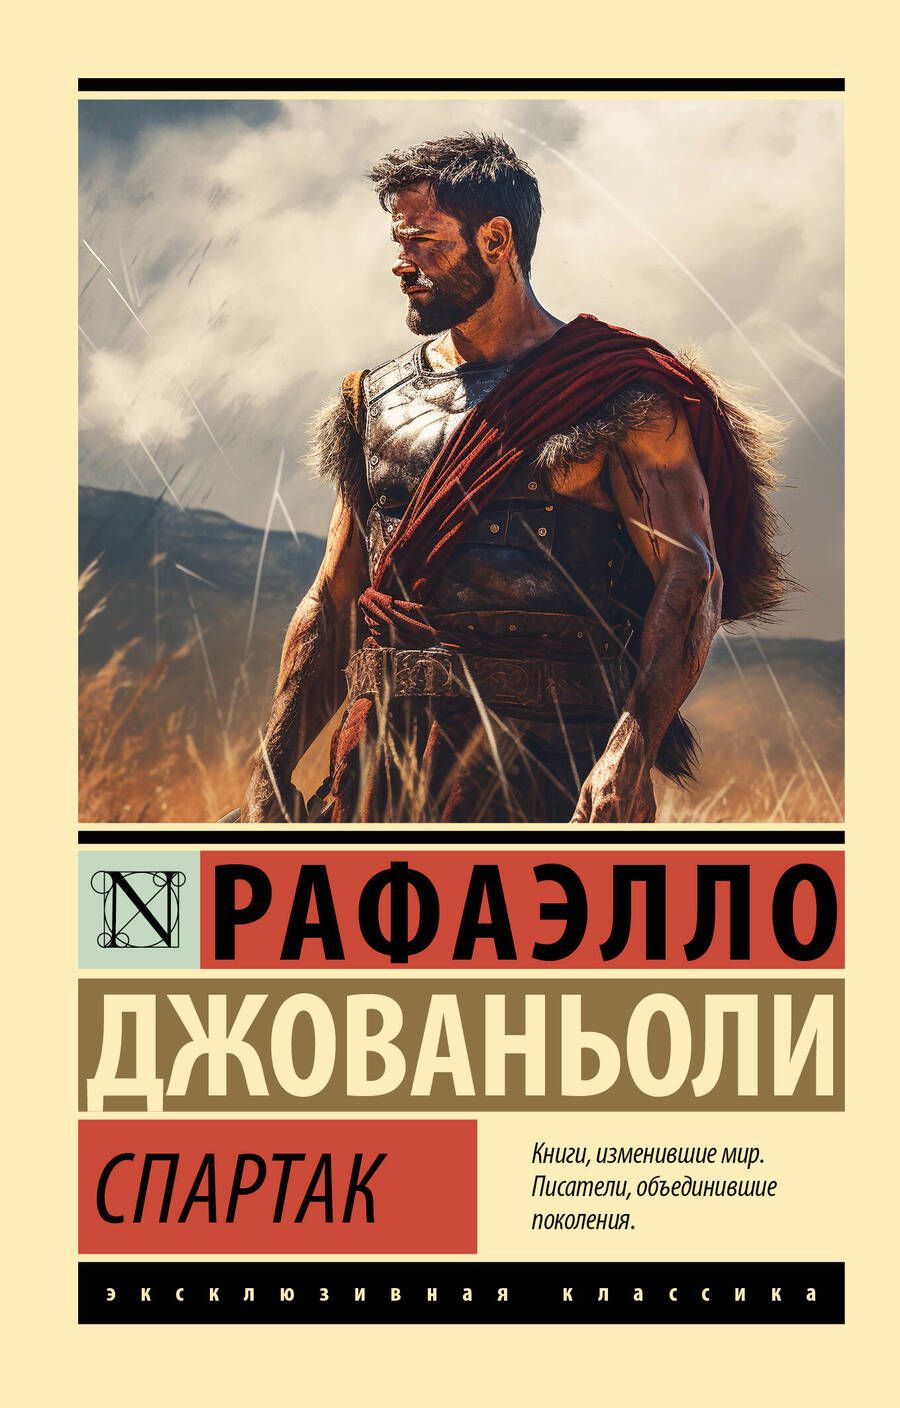 Обложка книги "Джованьоли: Спартак"